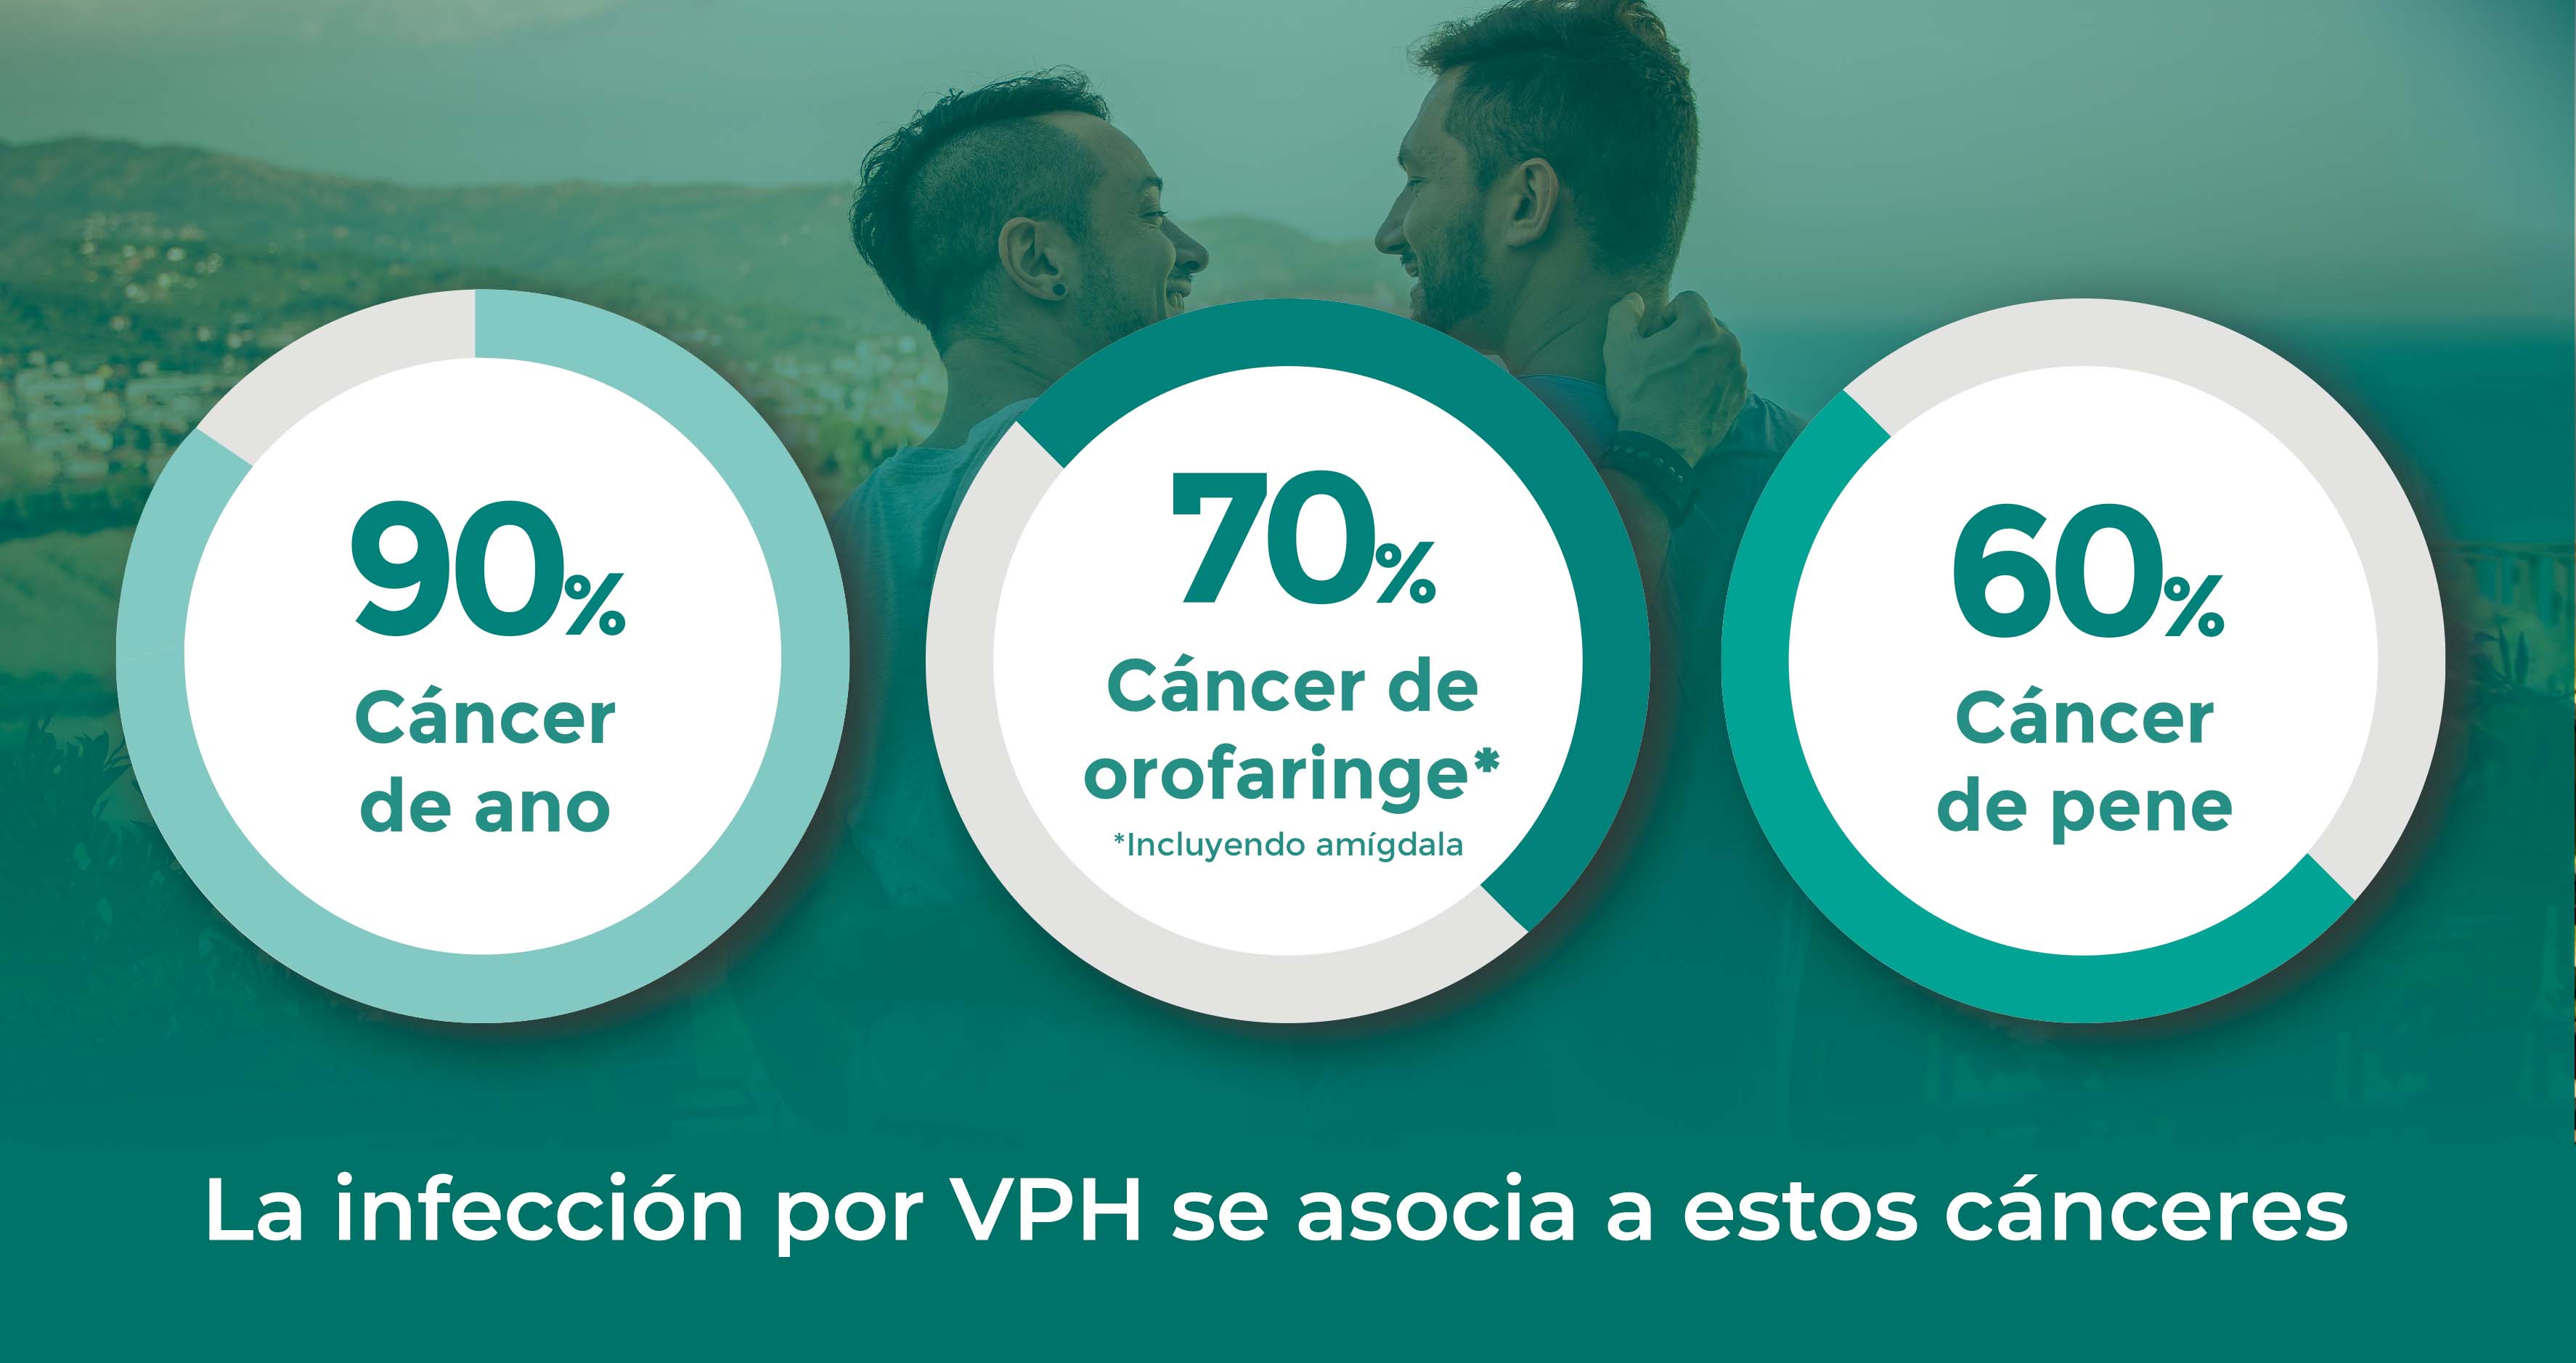 La infección por VPH se asocia a estos cánceres: cáncer de ano, cáncer de orofaringe y cáncer de pene.